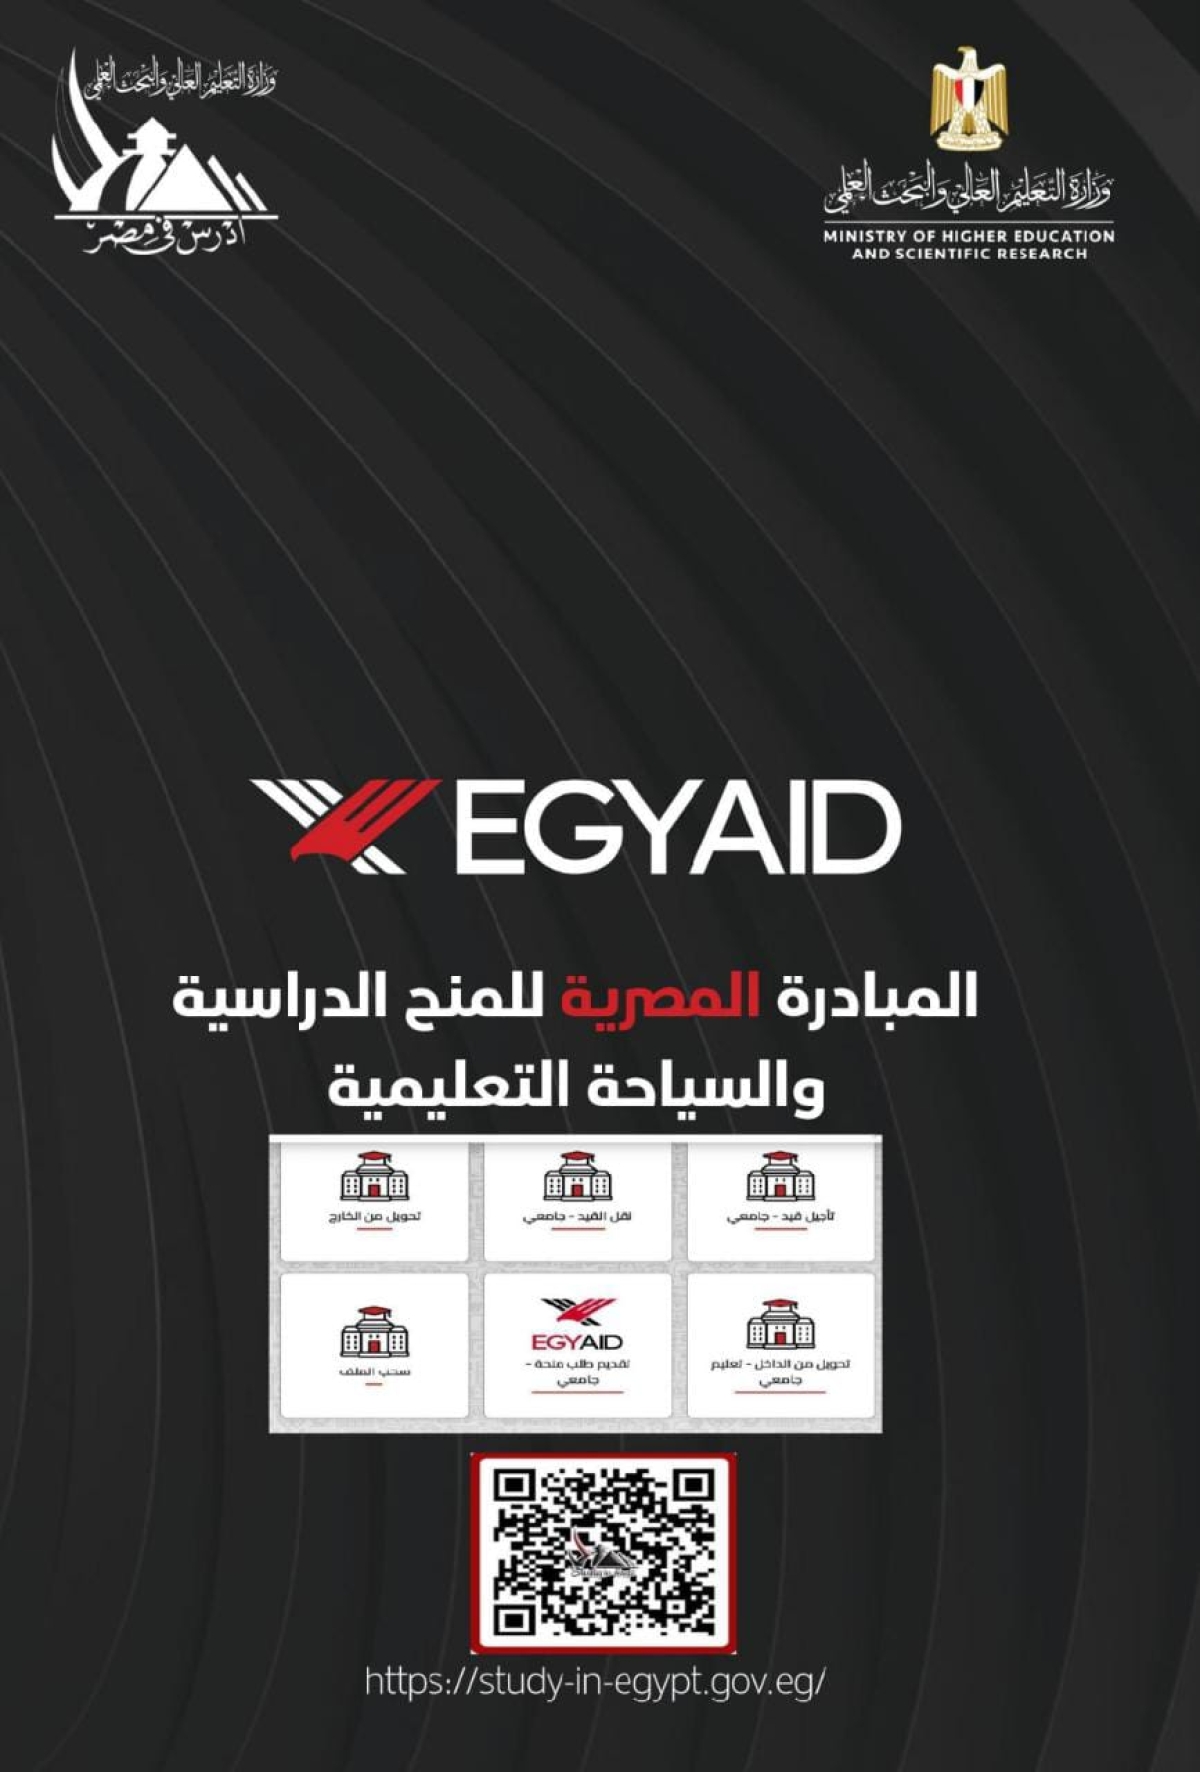 القواعد الخاصة للبرنامج المصري للمنح الدراسية EGY-AID للمرحلتين الجامعية والدراسات العليا